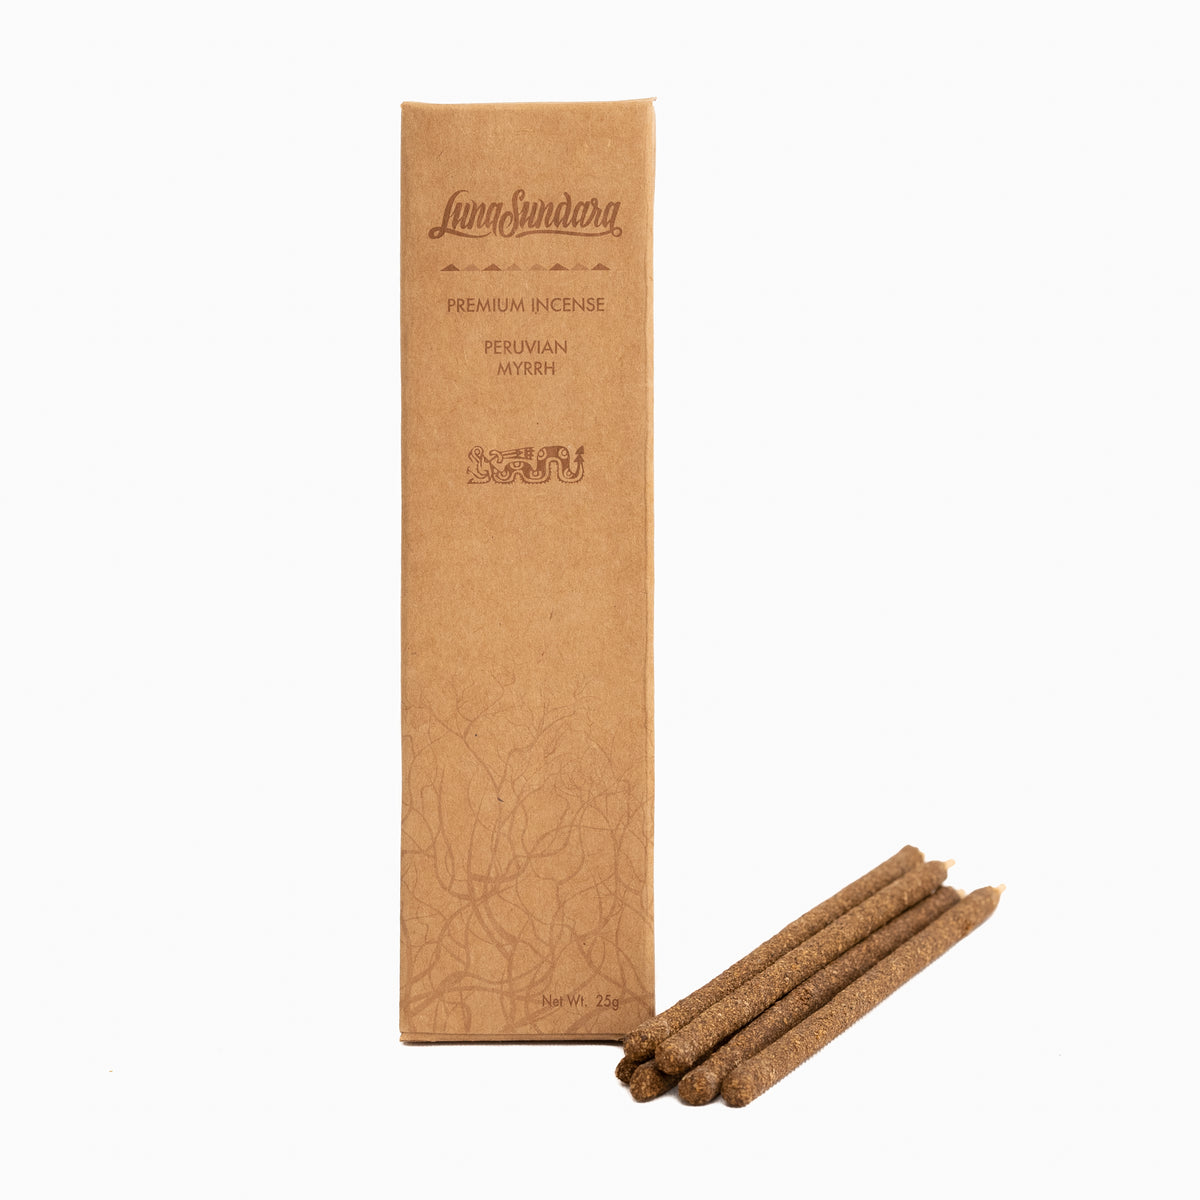 Premium Myrrh Hand Rolled Incense Sticks from 100% Wild Peruvian Myrrh ...